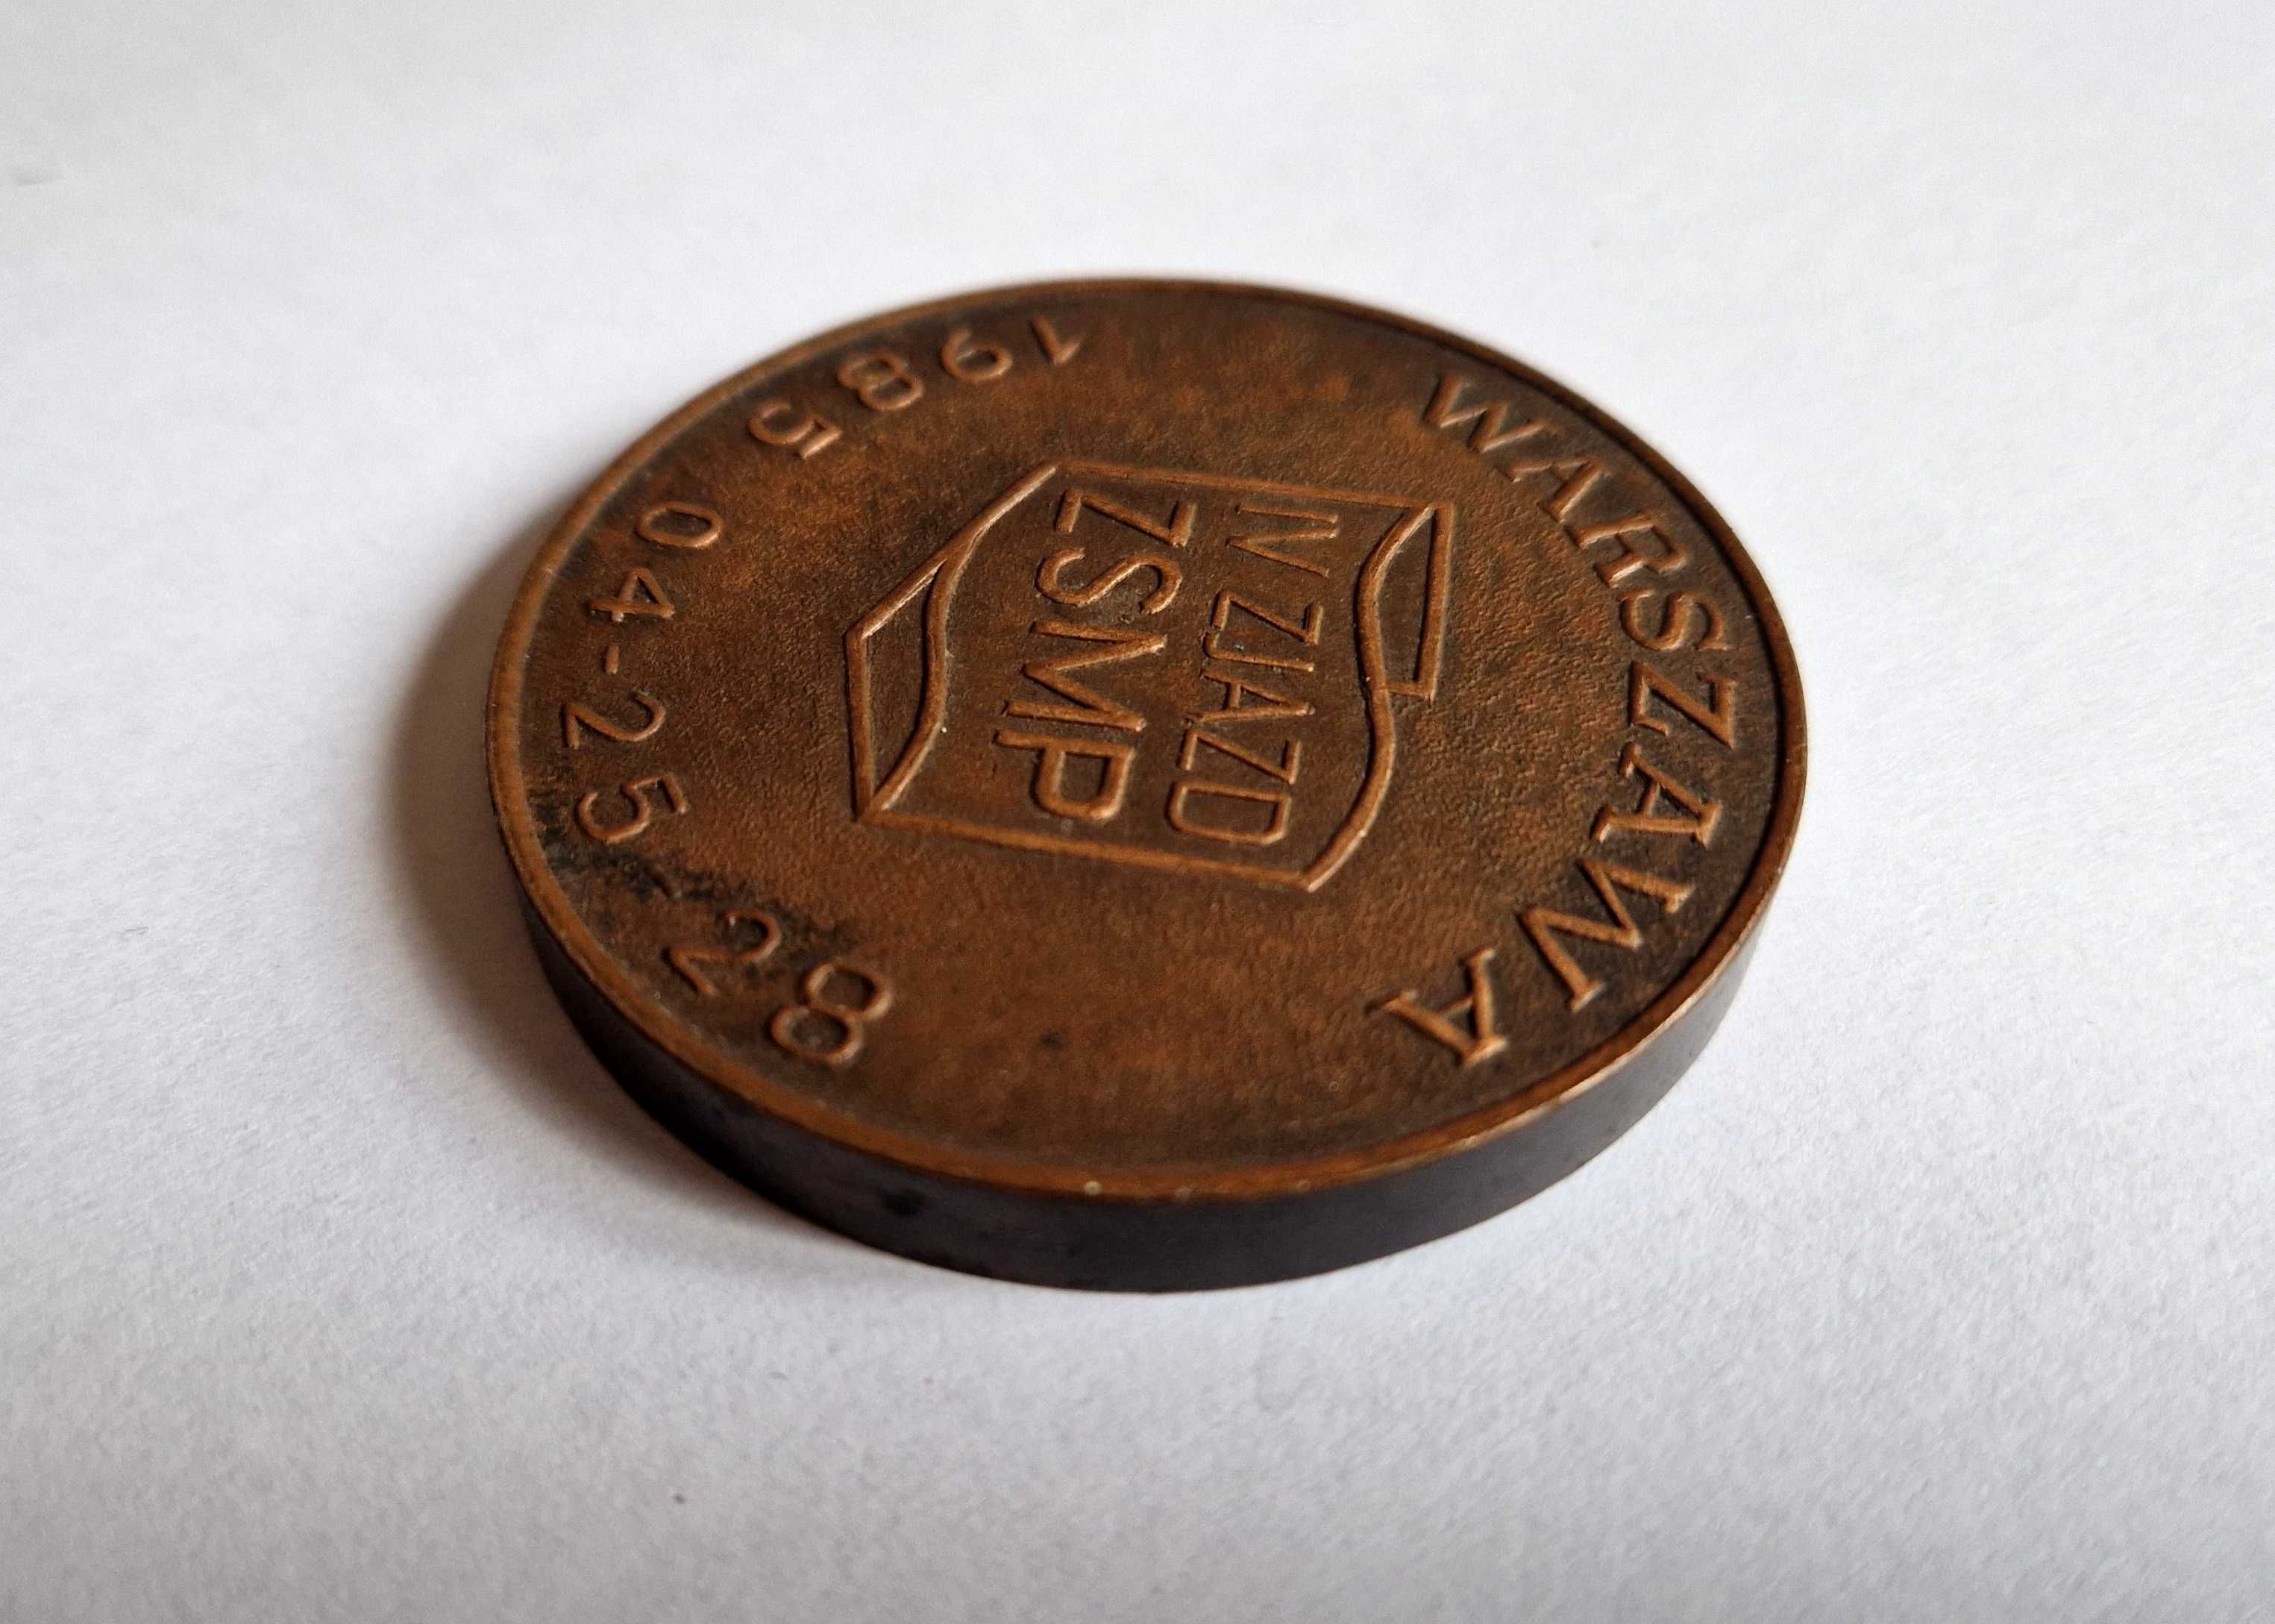 Odznaka / coin IV Zjazd ZSMP - Zarząd Główny 1985 (PRL)